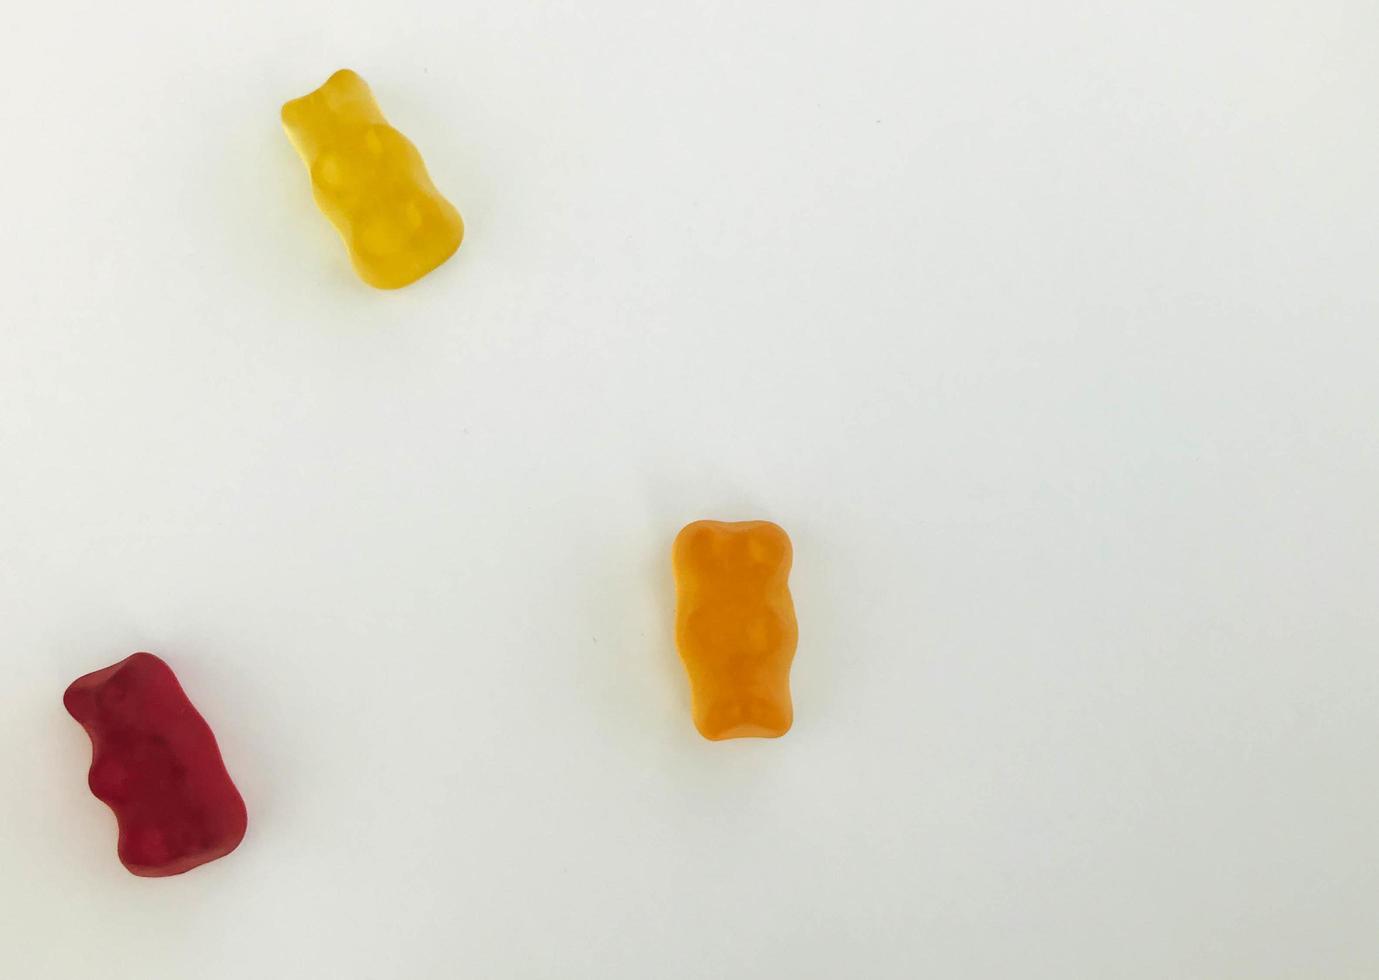 Gummibärchen auf einem weißen, matten Hintergrund. Roter, gelber und orangefarbener Bär liegen auf dem Tisch. Bonbons aus eigener Herstellung. Bonbons zum Dekorieren von Kuchen und Gebäck foto